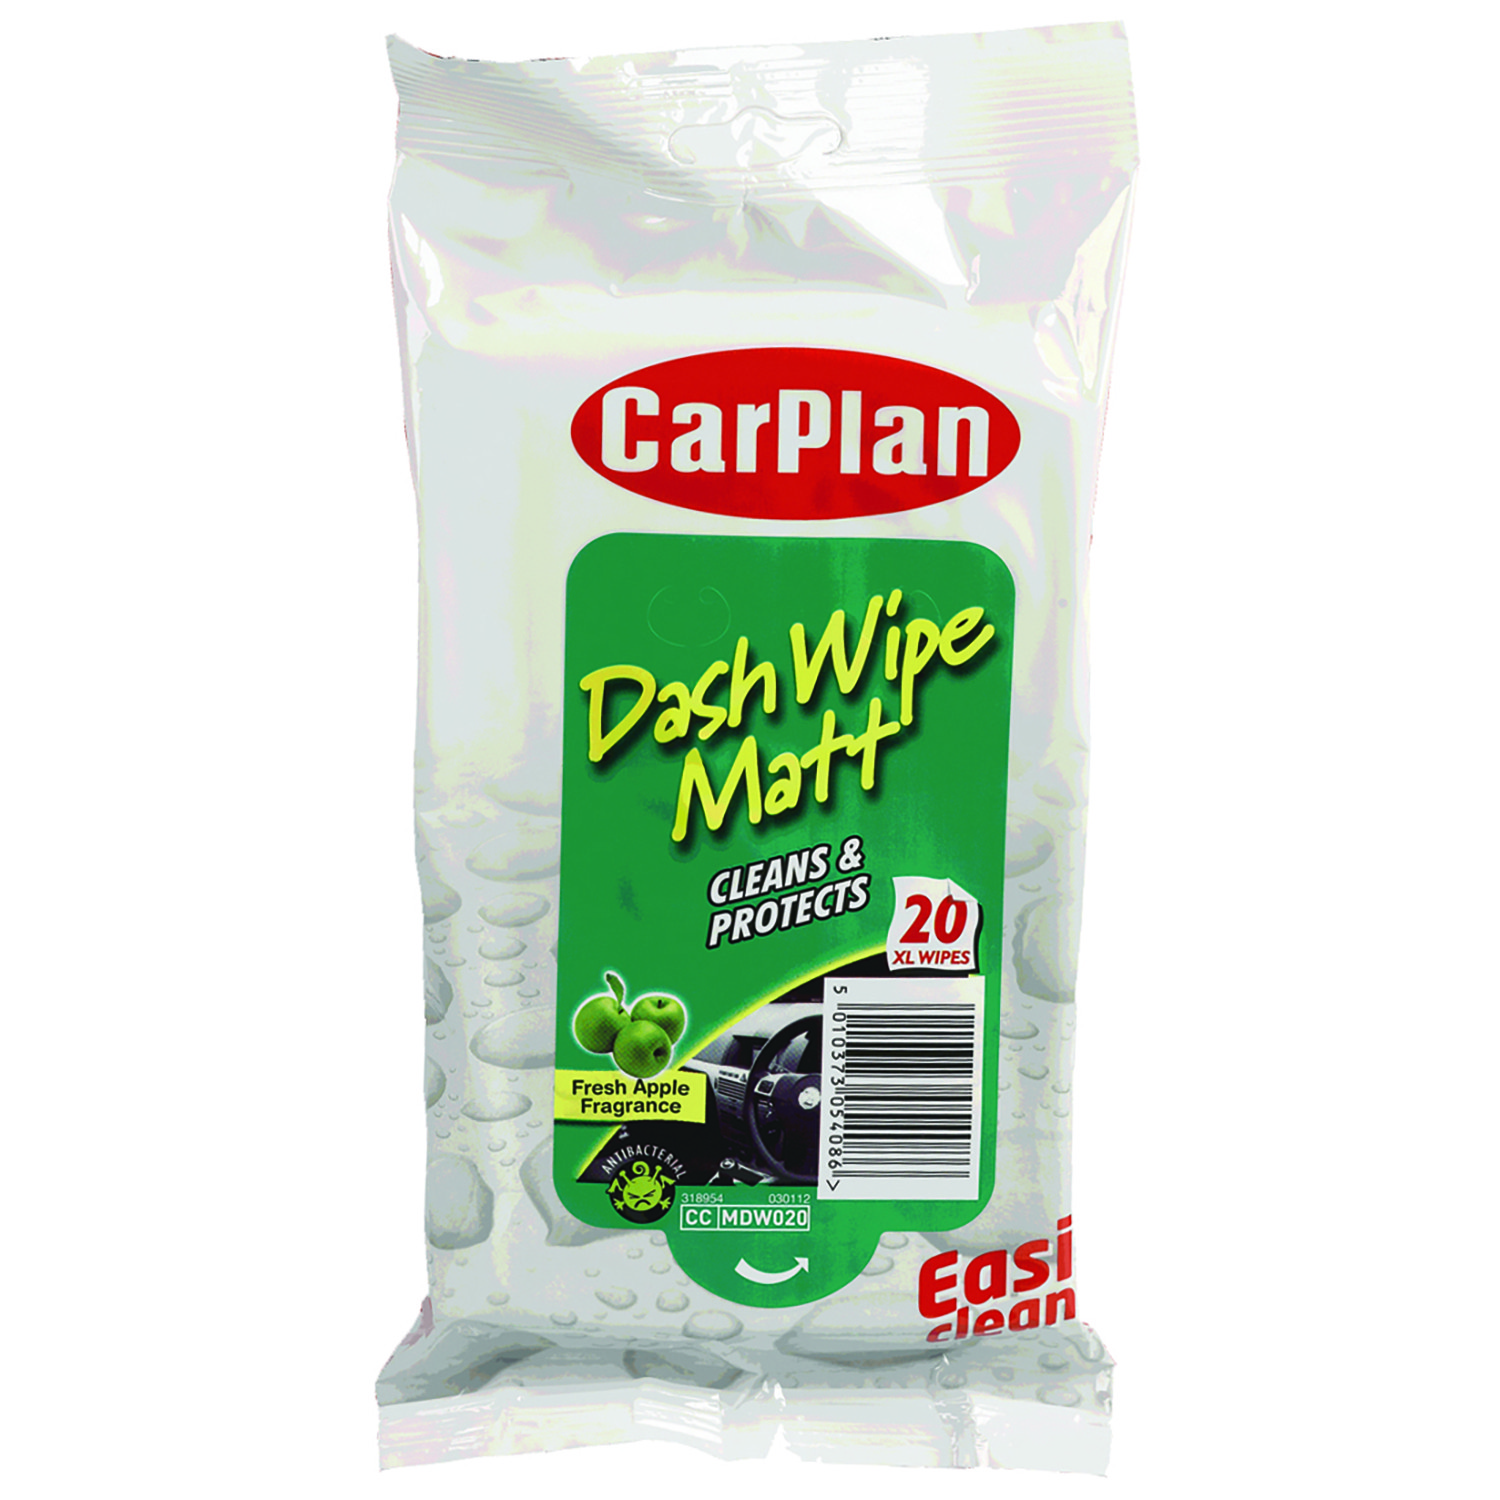 CarPlan Dash XL Wipes 20 Pack Image